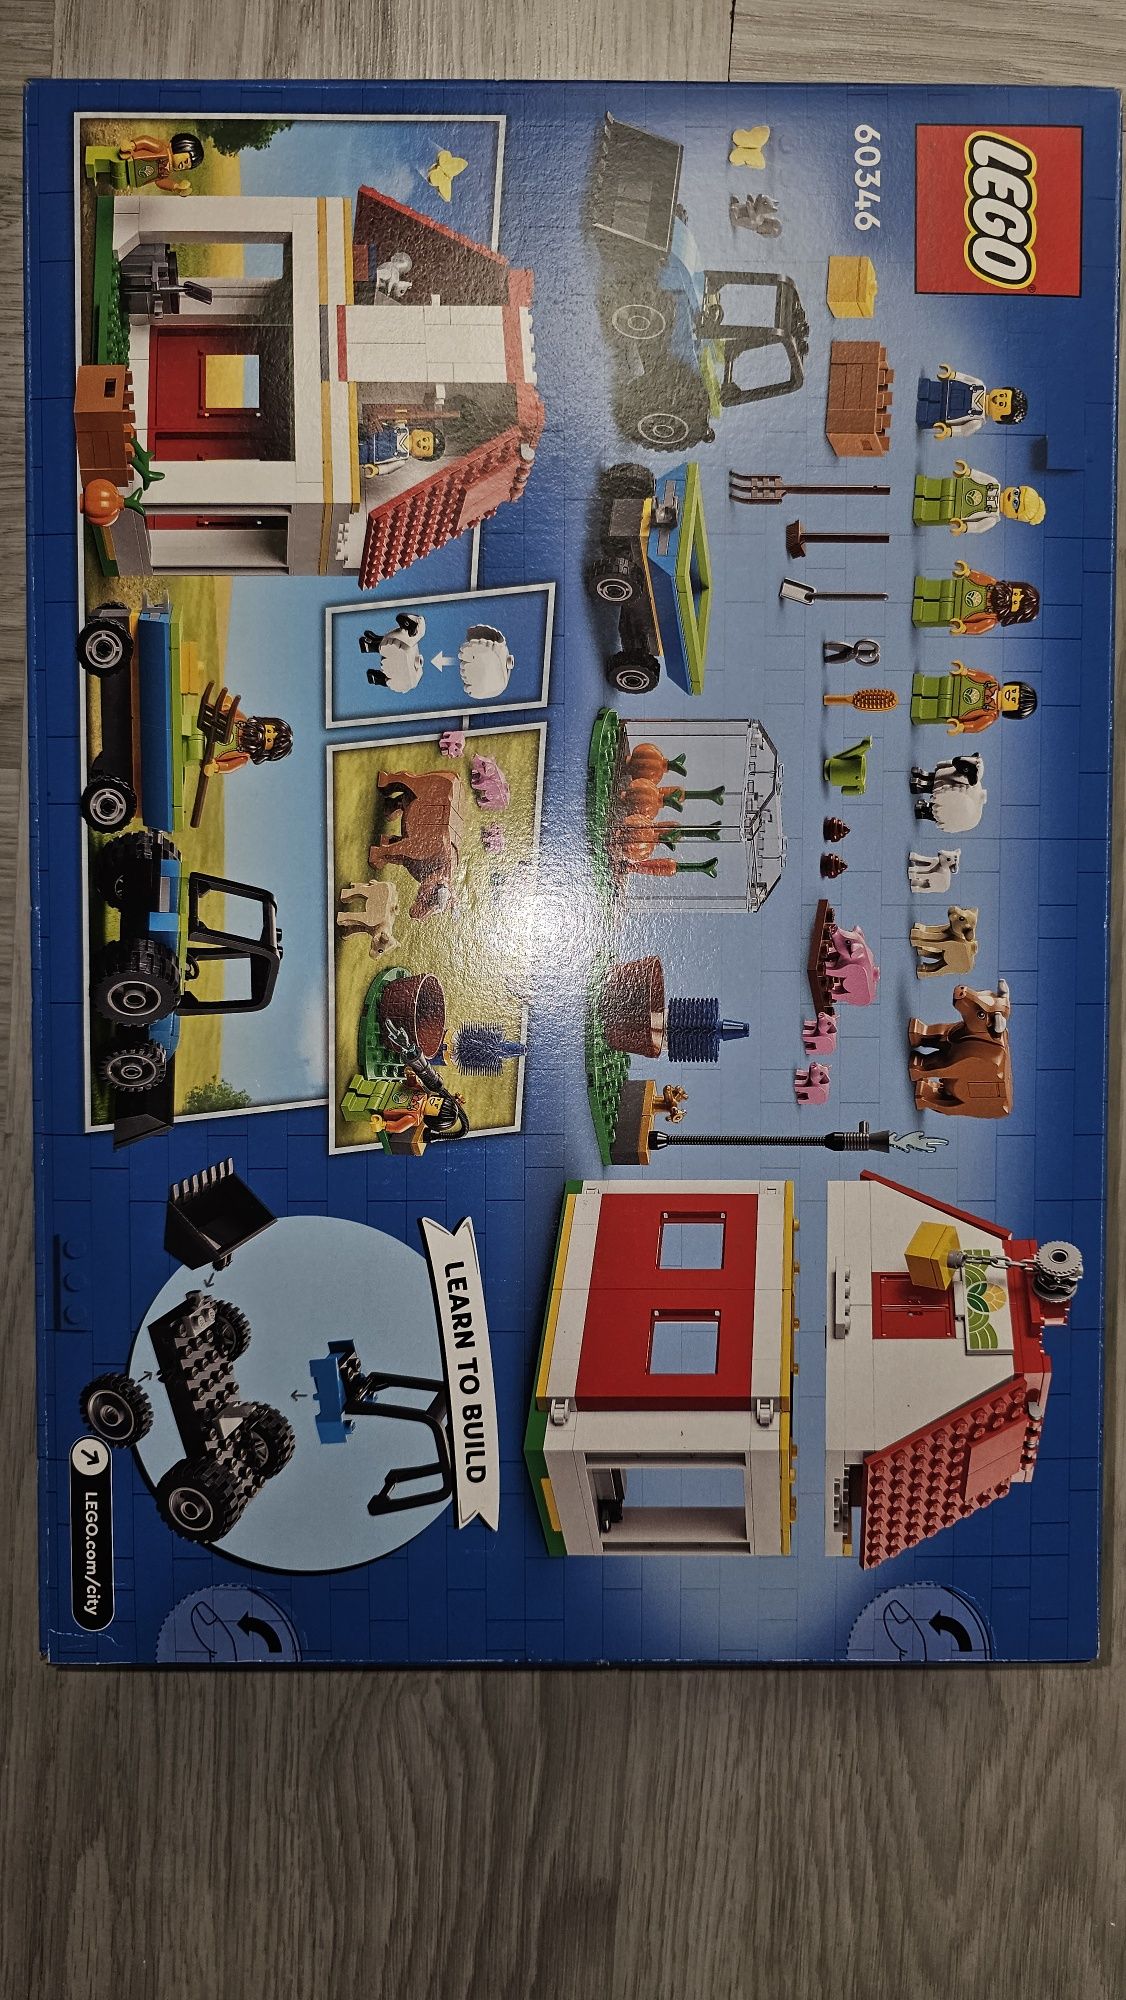 Lego City 60346 Stodoła i zwierzeta gospodarcze - z 2022r